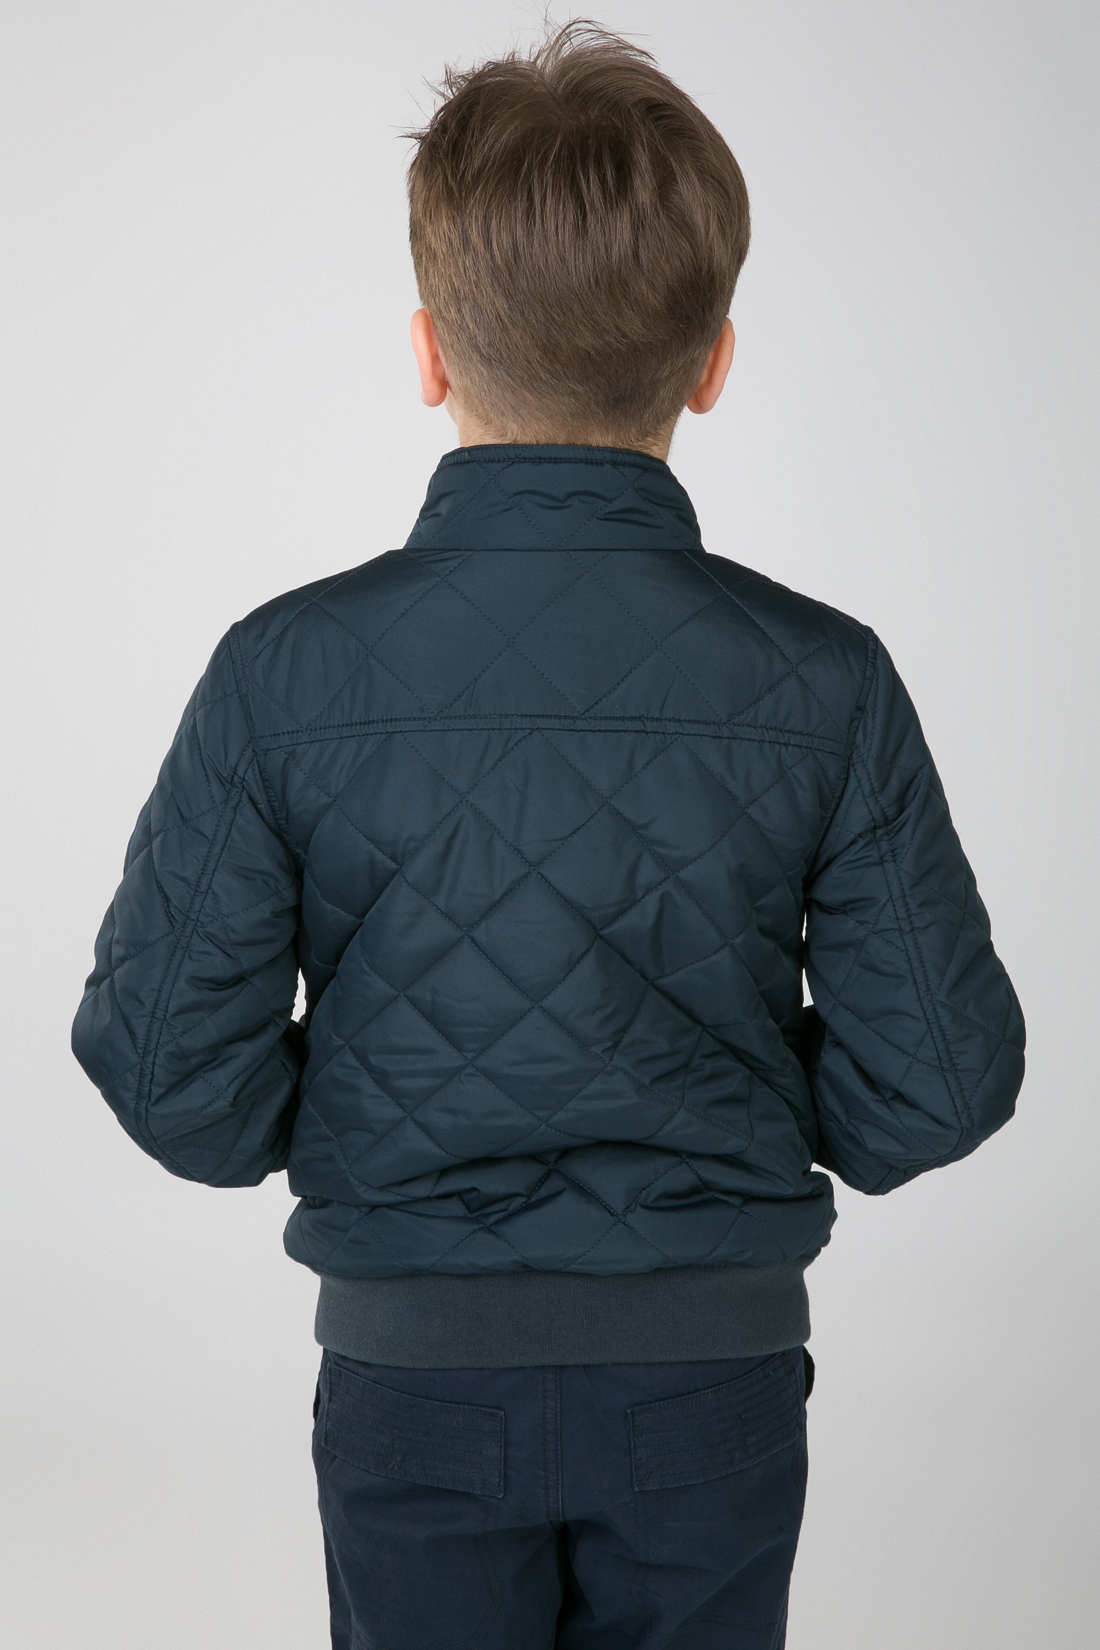 Куртка для мальчика (арт. baon BJ538005), размер 134-140, цвет синий Куртка для мальчика (арт. baon BJ538005) - фото 2